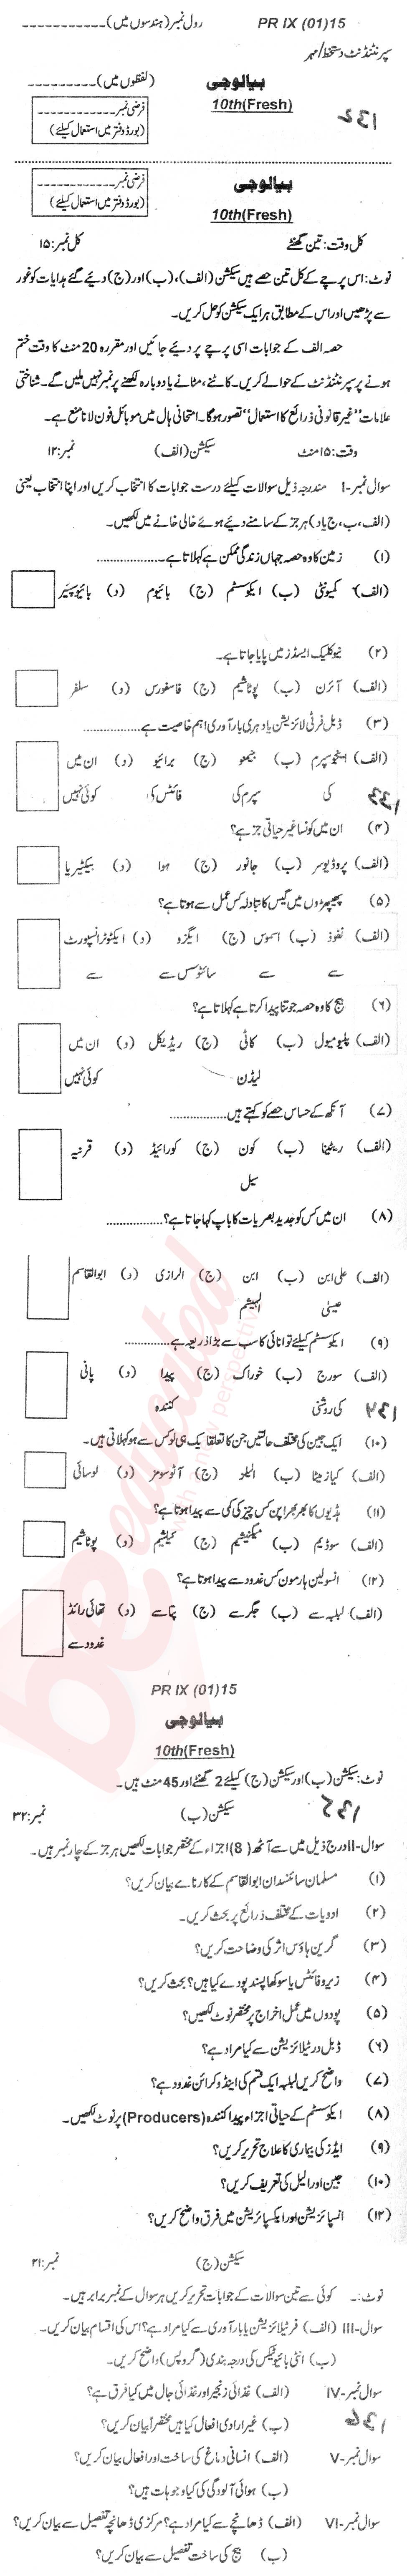 Biology 10th Urdu Medium Past Paper Group 1 BISE DI Khan 2015